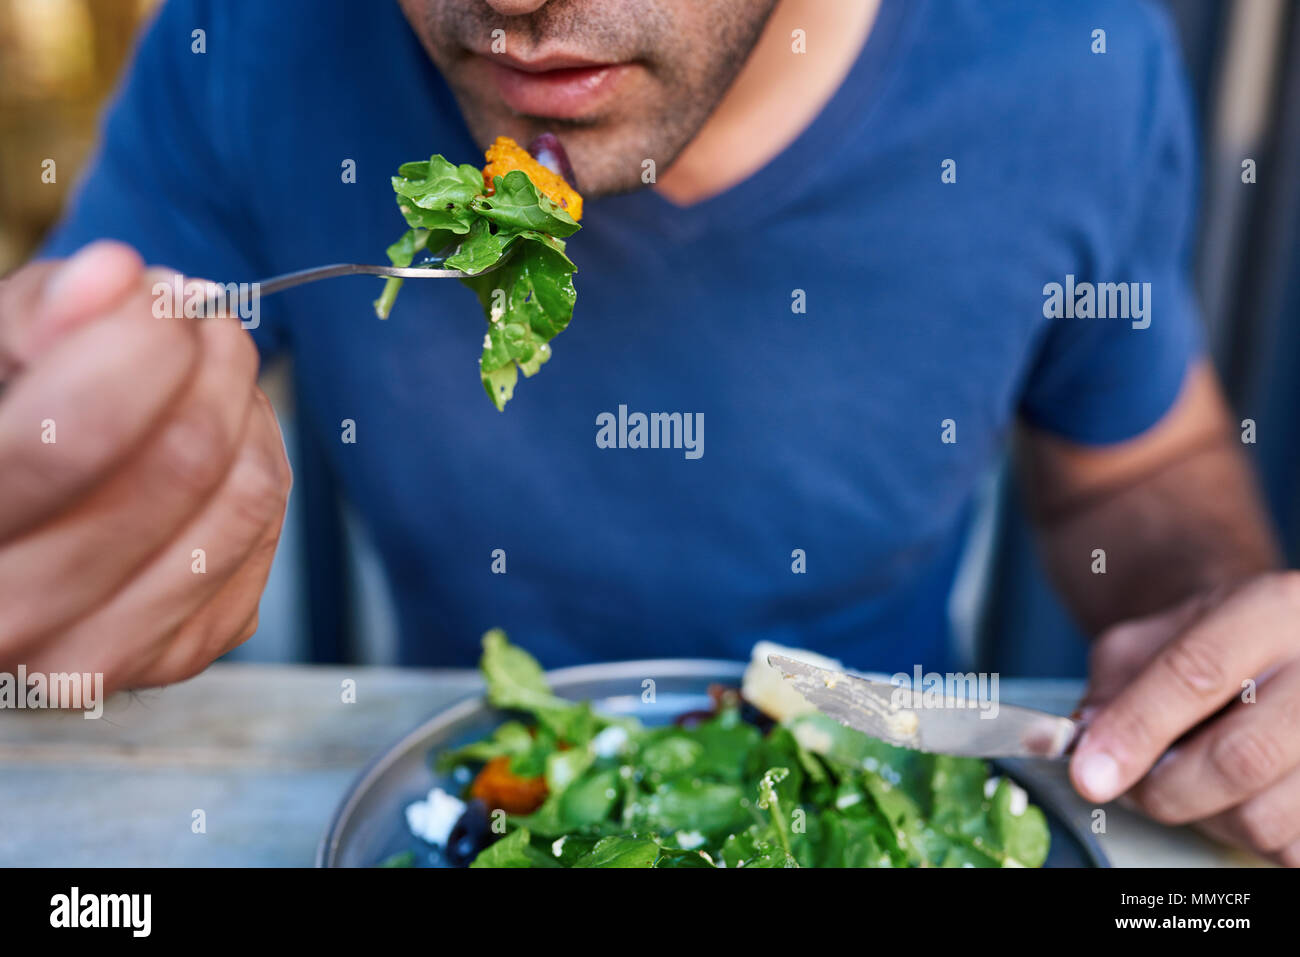 Jeune homme mangeant une fourchette pleine de délicieux salade Banque D'Images